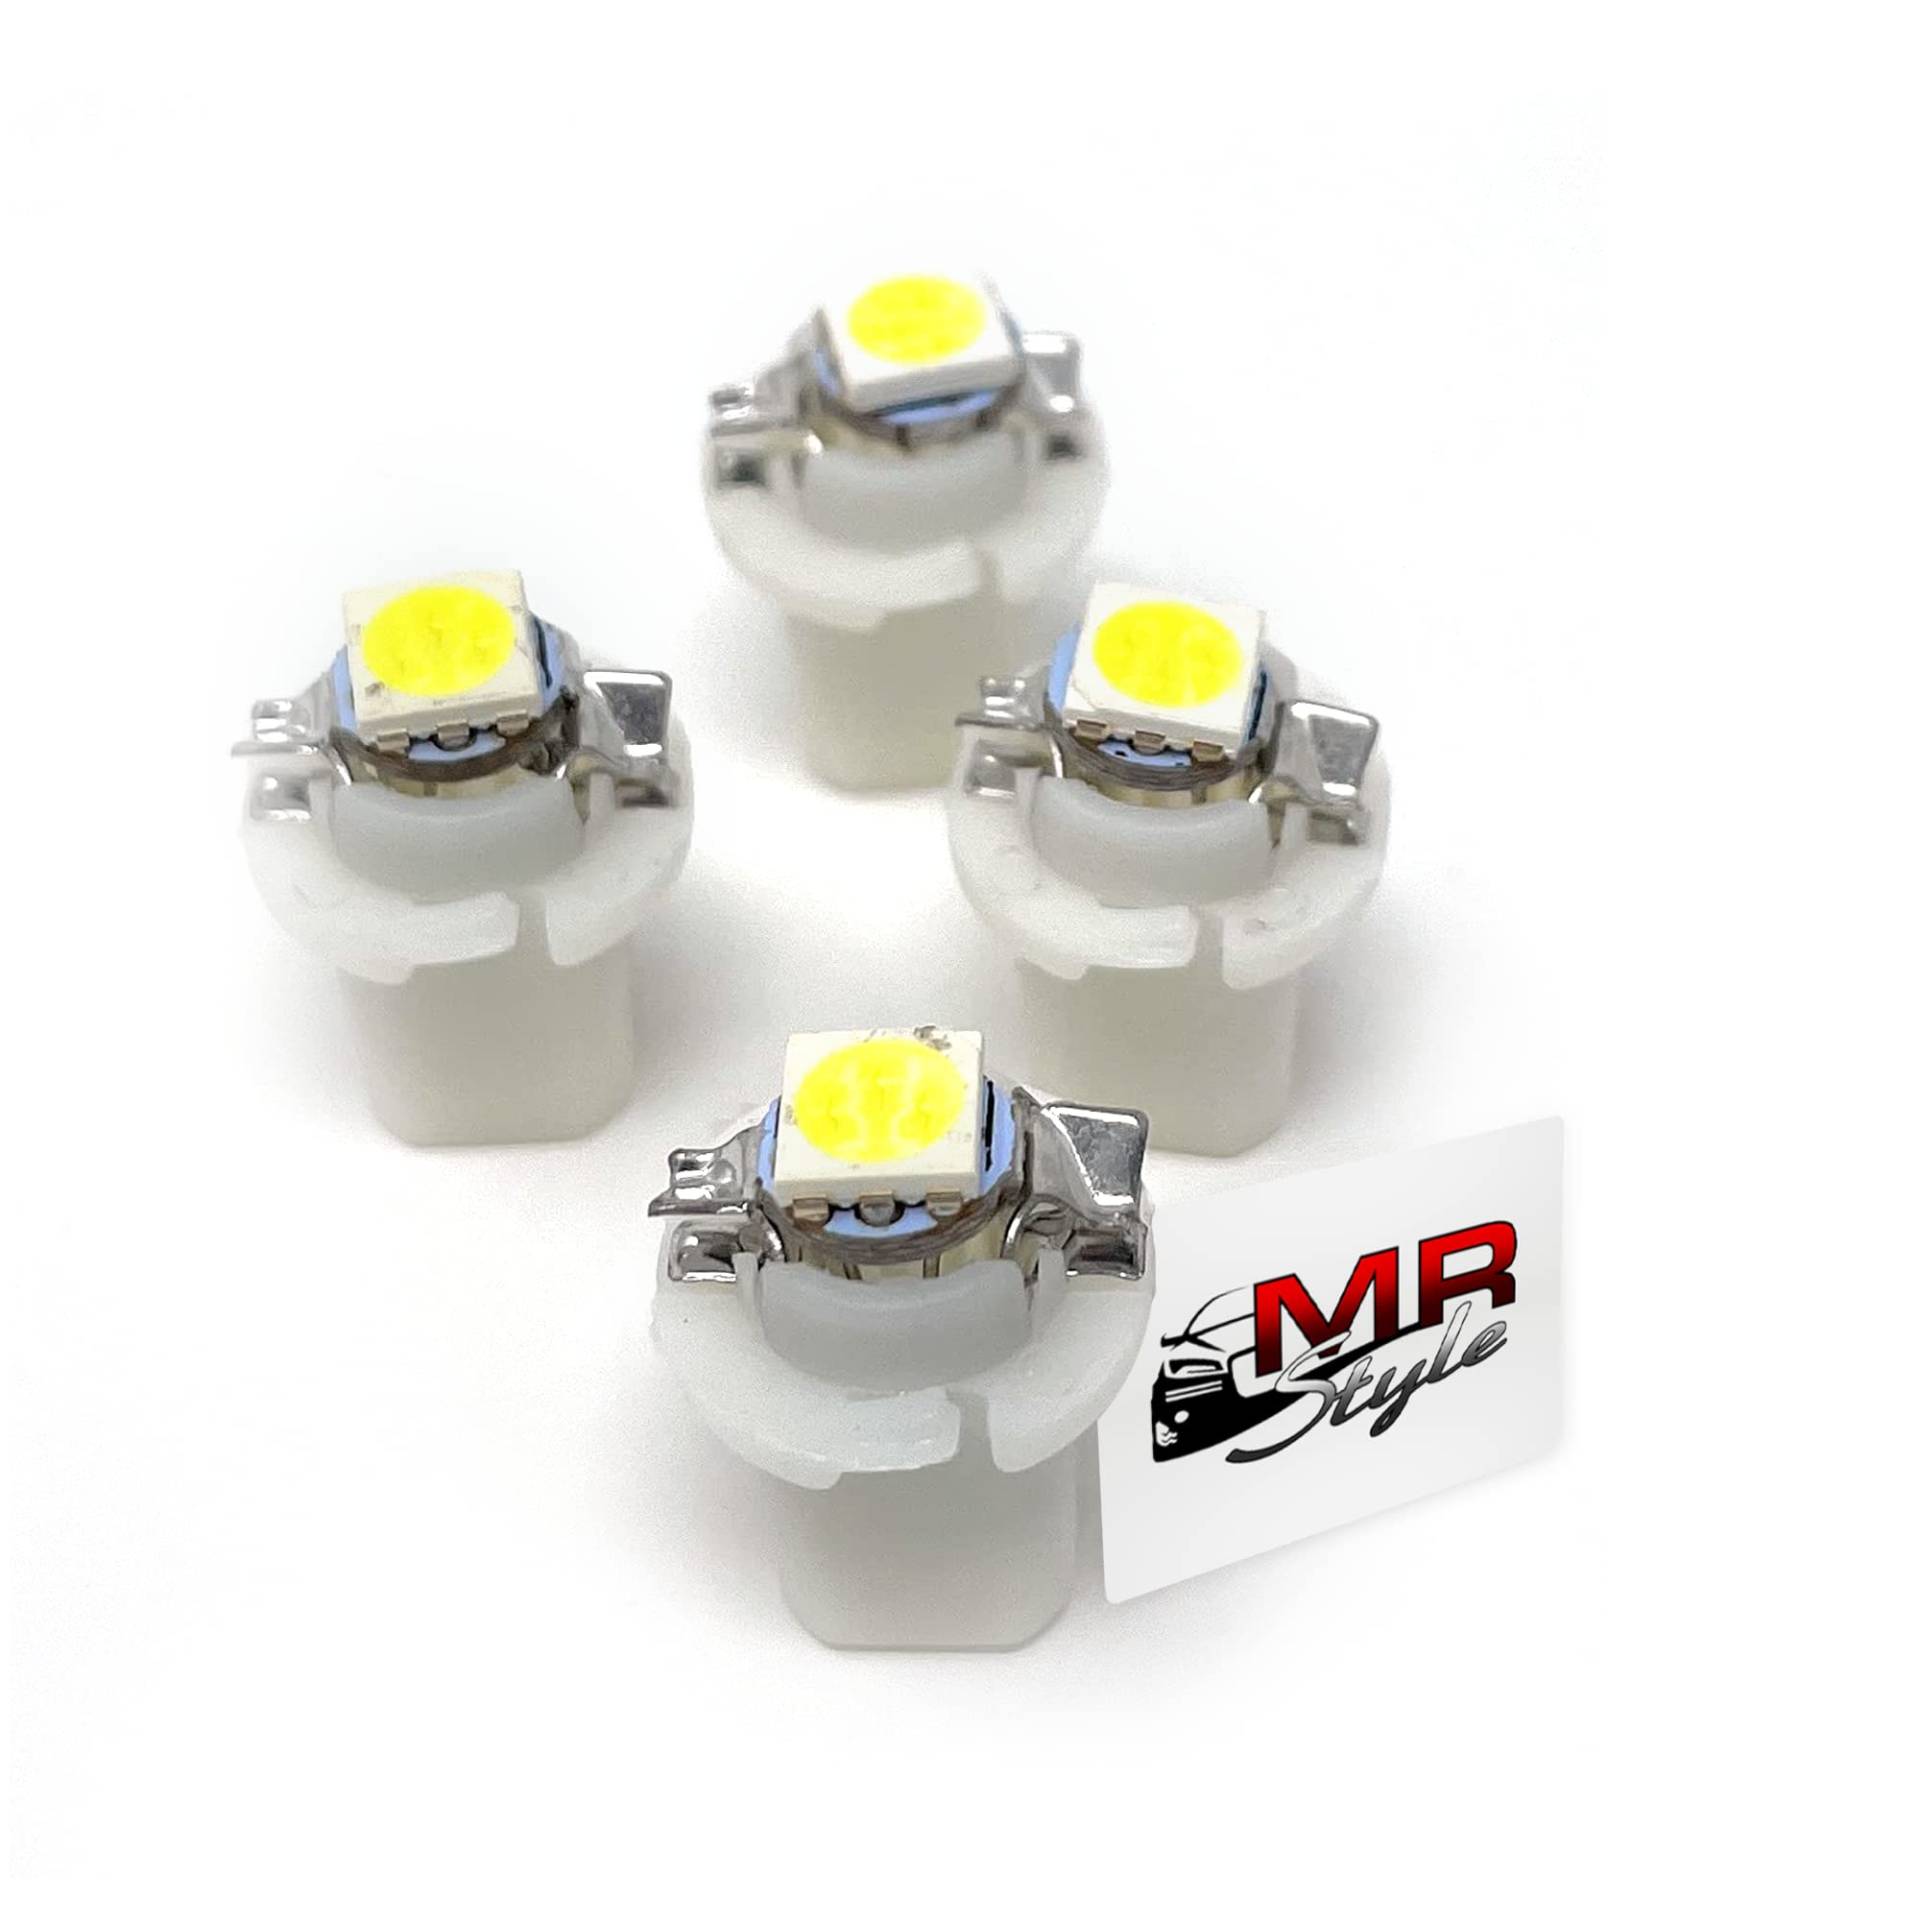 MR-Style Set Aufkleber und 4x high Power LED Tachobeleuchtung (weiß) kompatibel mit VW Vento + Golf 3, Instrumentenbeleuchtung Umbauset von MR-Style